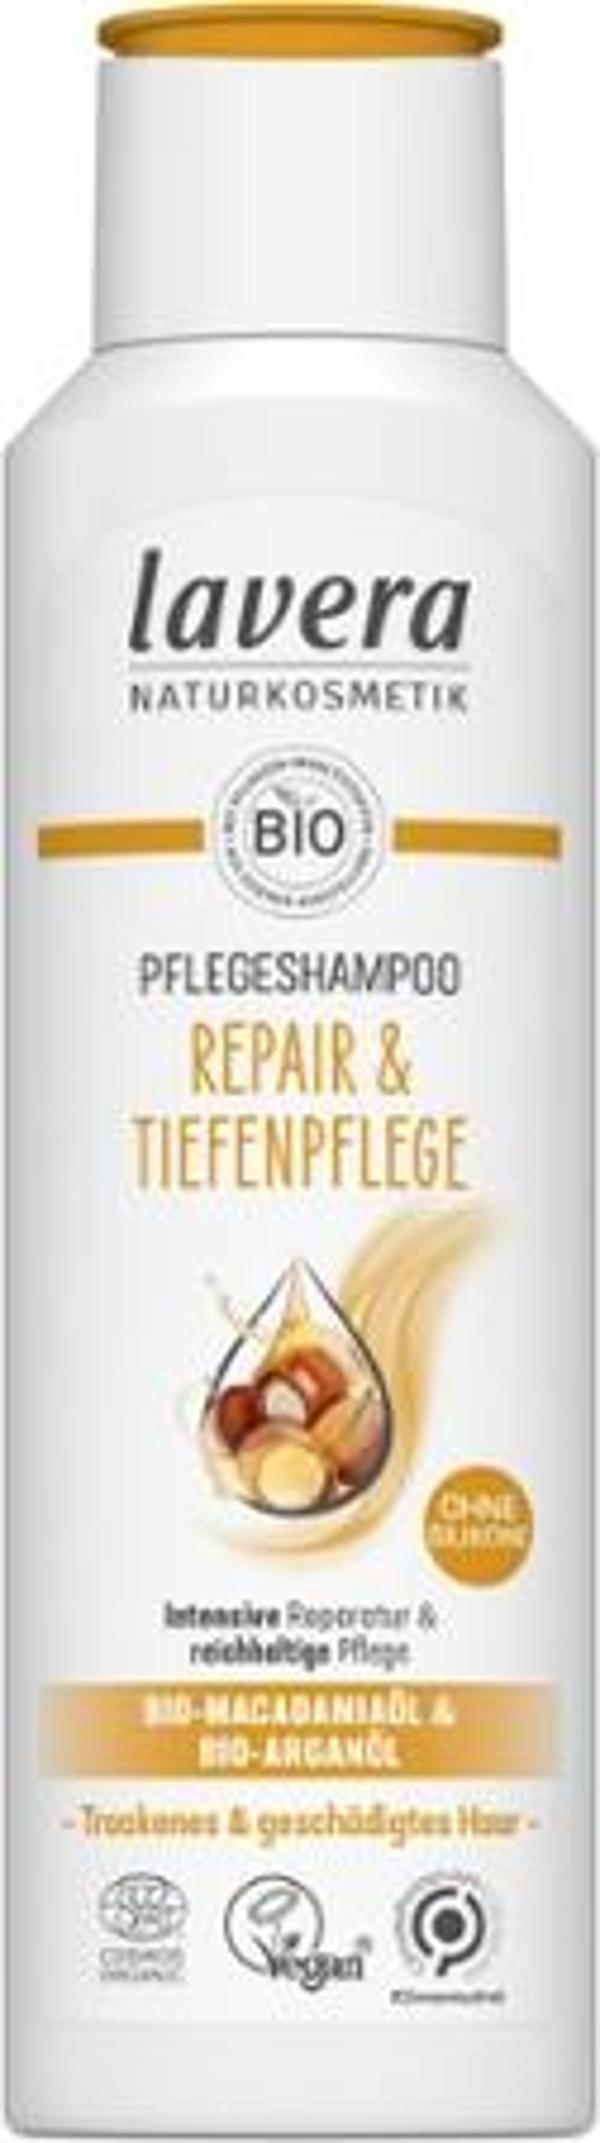 Produktfoto zu Repair & Pflegeshampoo, 250 ml